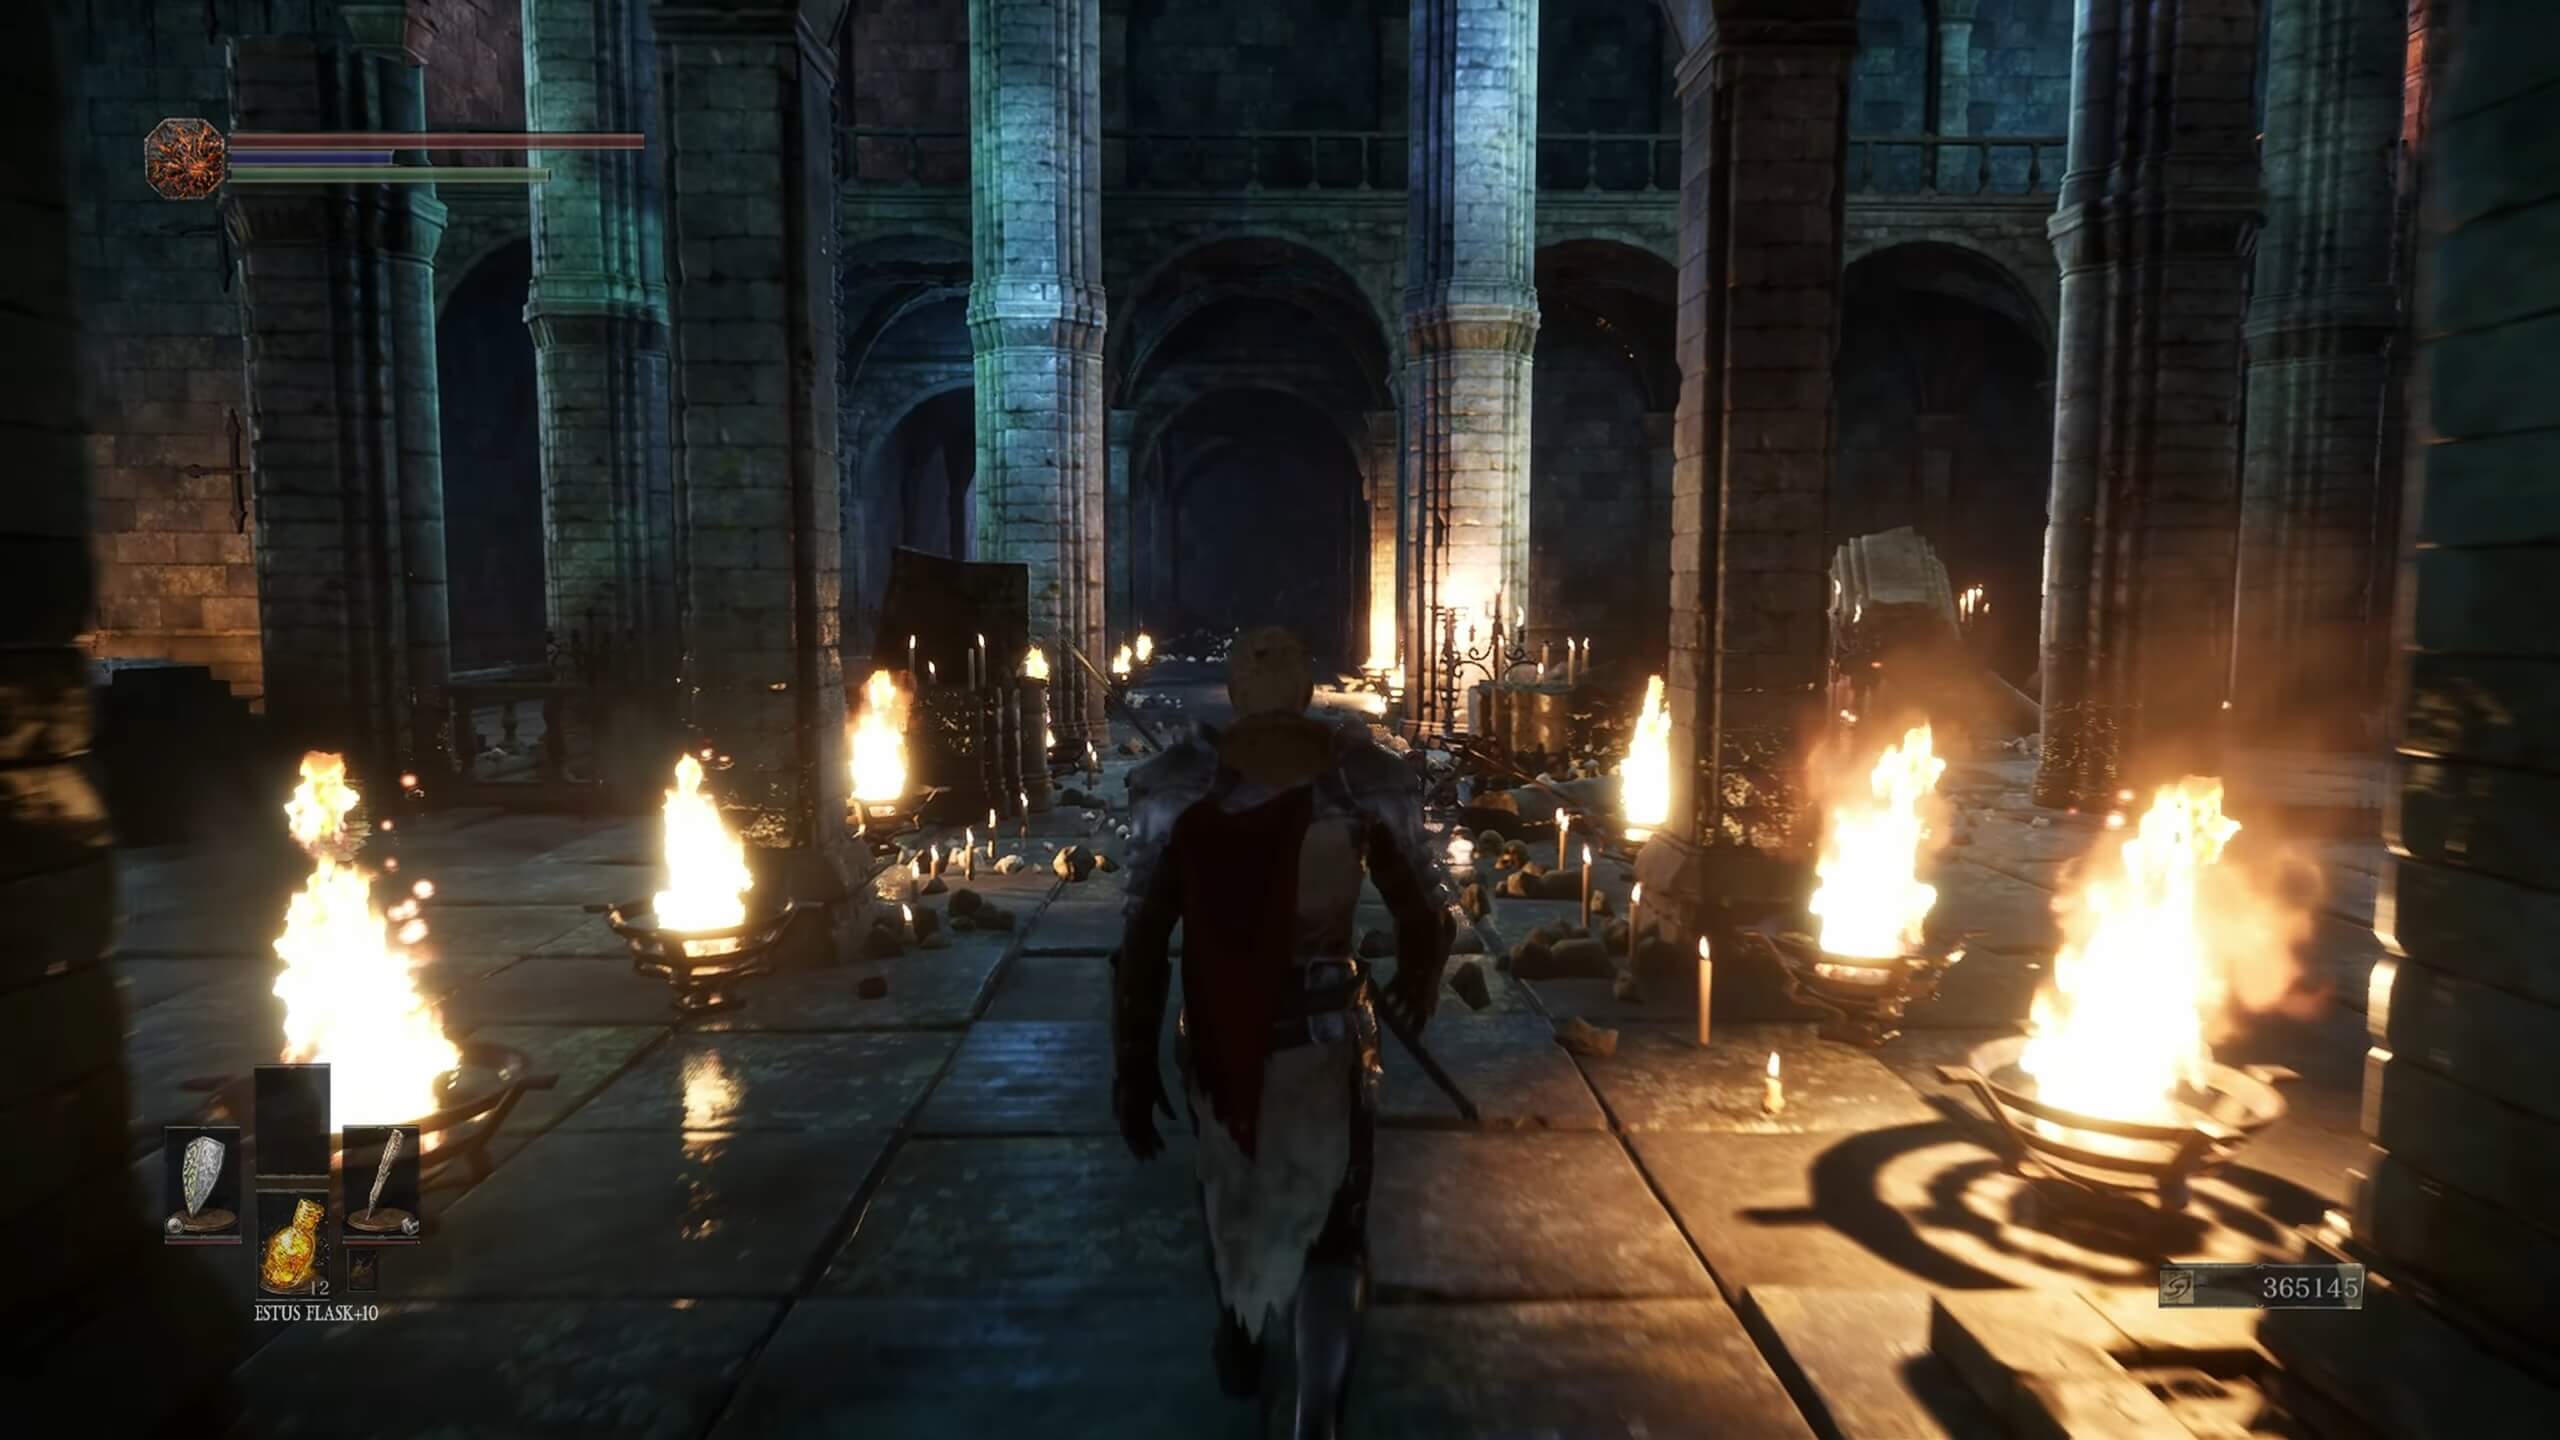 GTA 6 - Unreal Engine 5 Amazing Showcase l Concept Trailer 